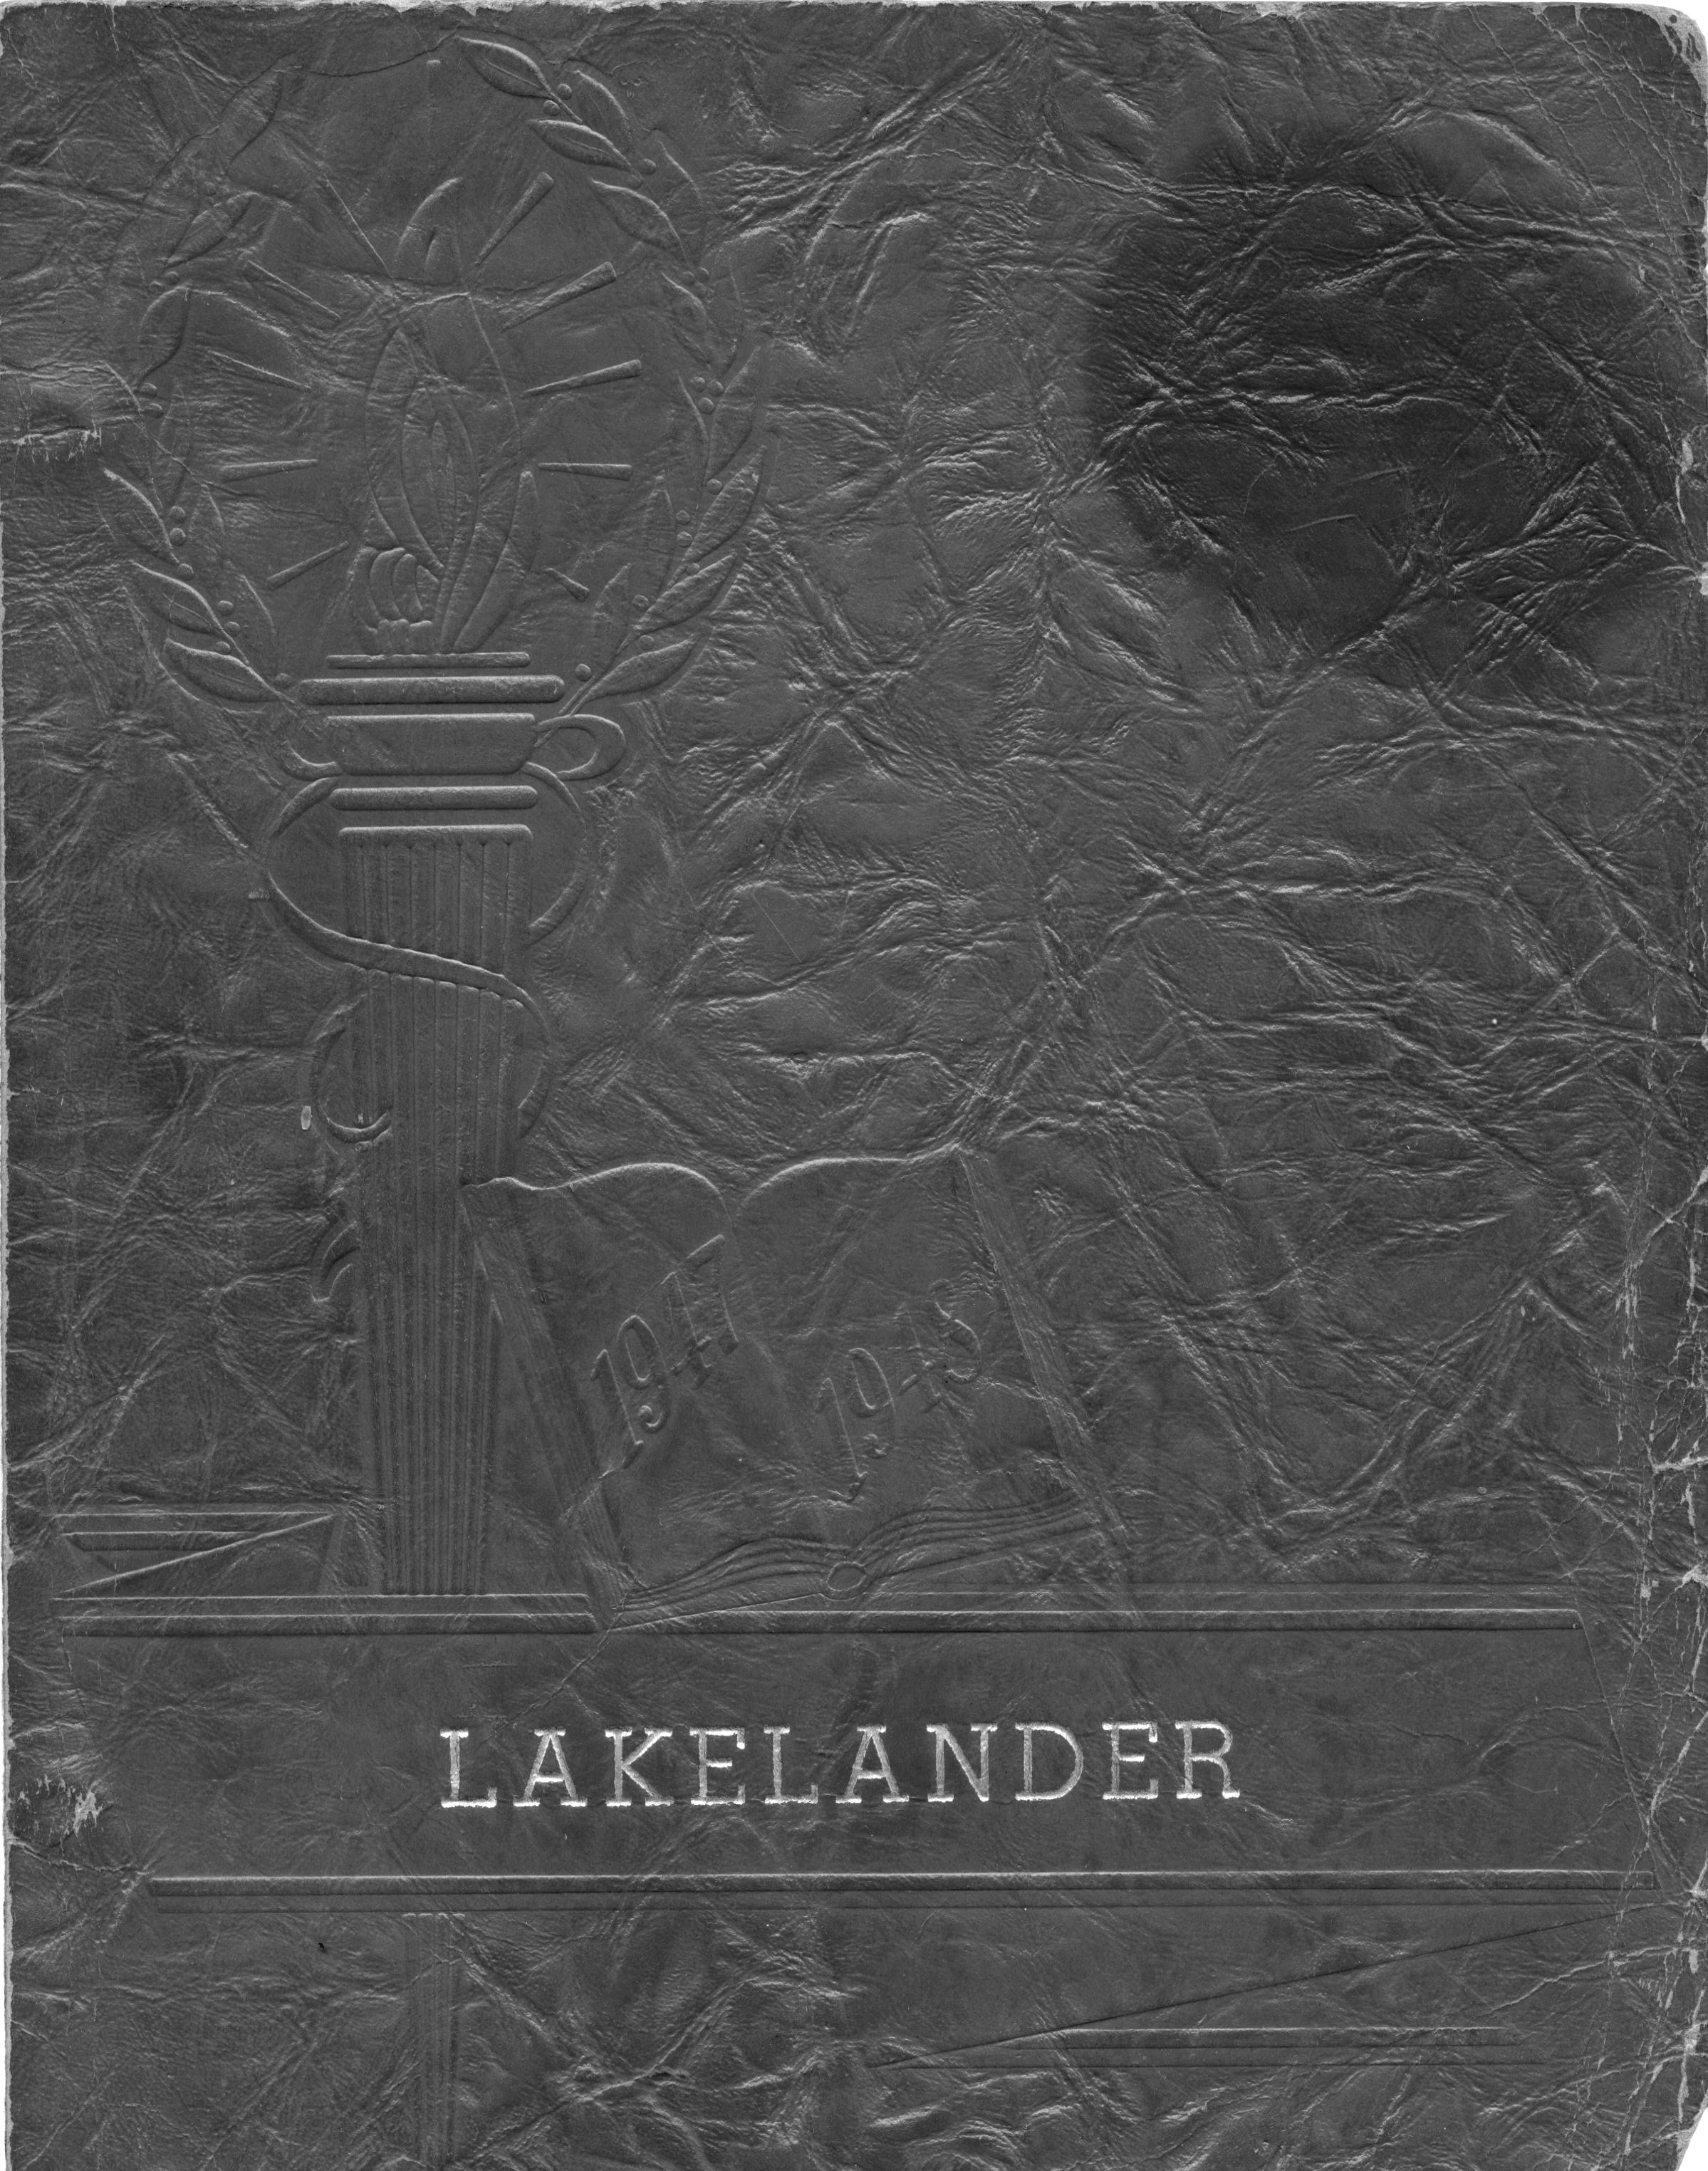 Lakelander 1948 Yearbook -Cover b/w